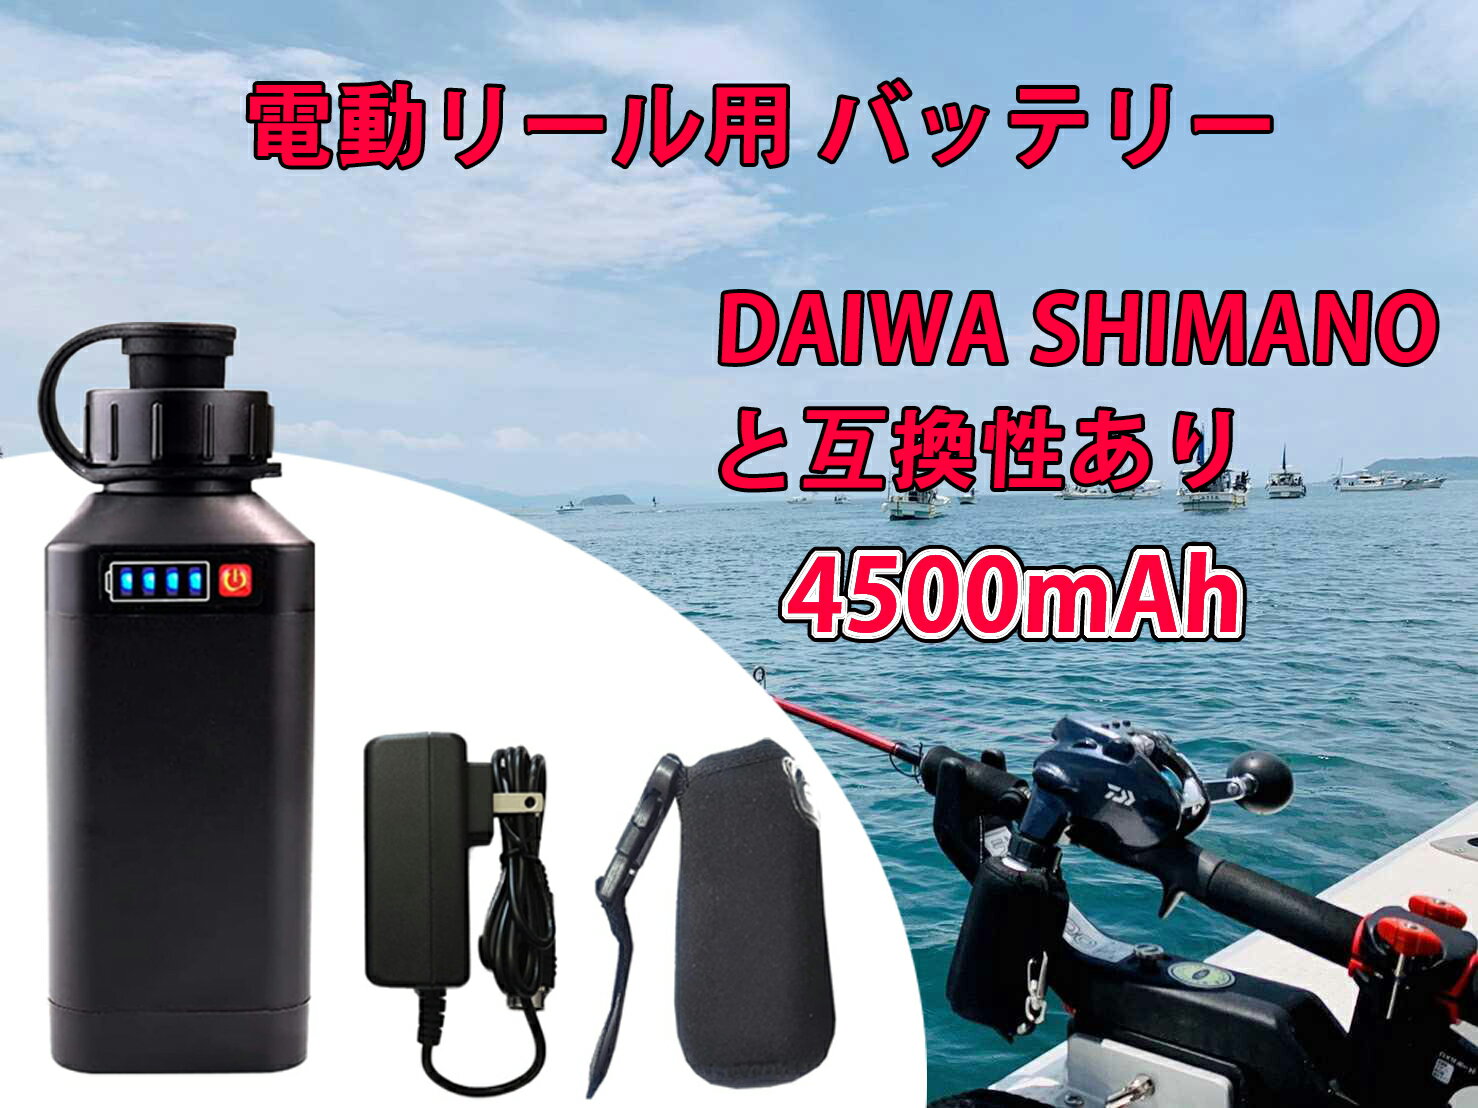 【即日発送】電動リール用 バッテリー 4500mAh LED電量表示付き 船釣り 電動ジギング用 バッテリー DAIWA SHIMANOと…